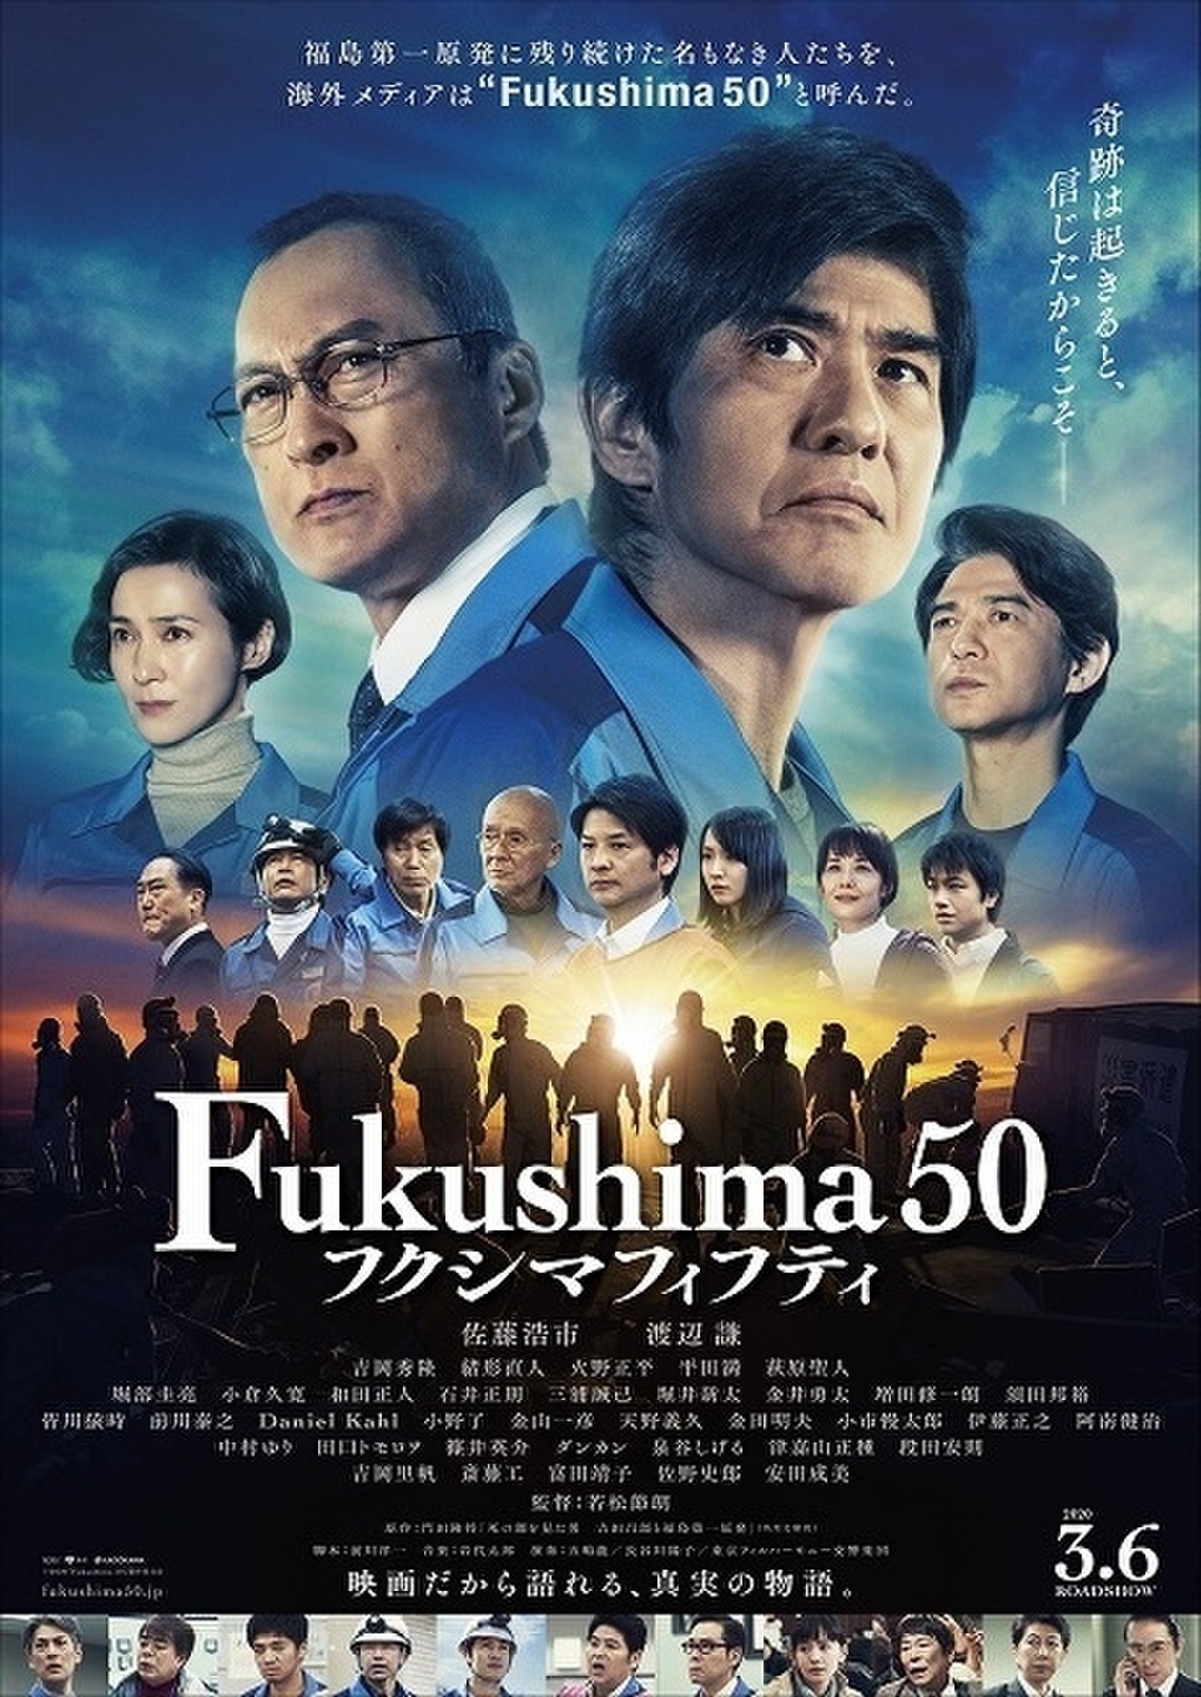 Fukushima 50 DVD 通常版 佐藤浩市 渡辺謙